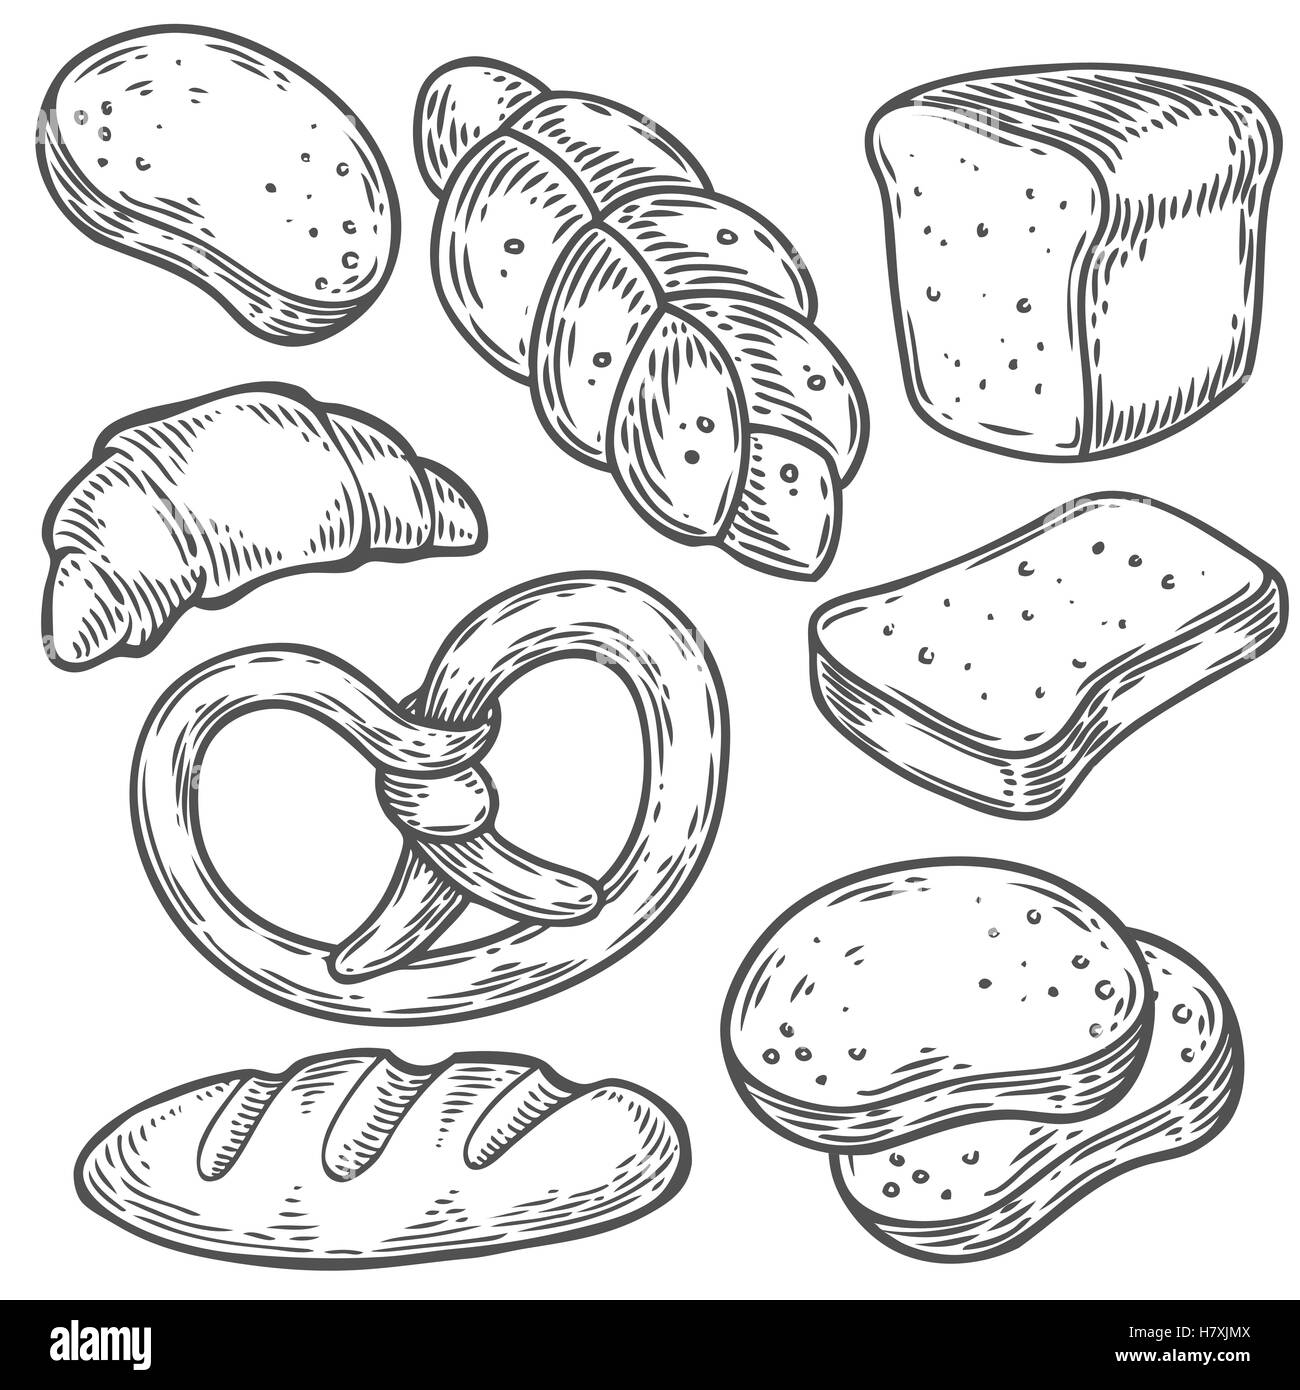 Раскраска хлеба и хлебобулочных изделий